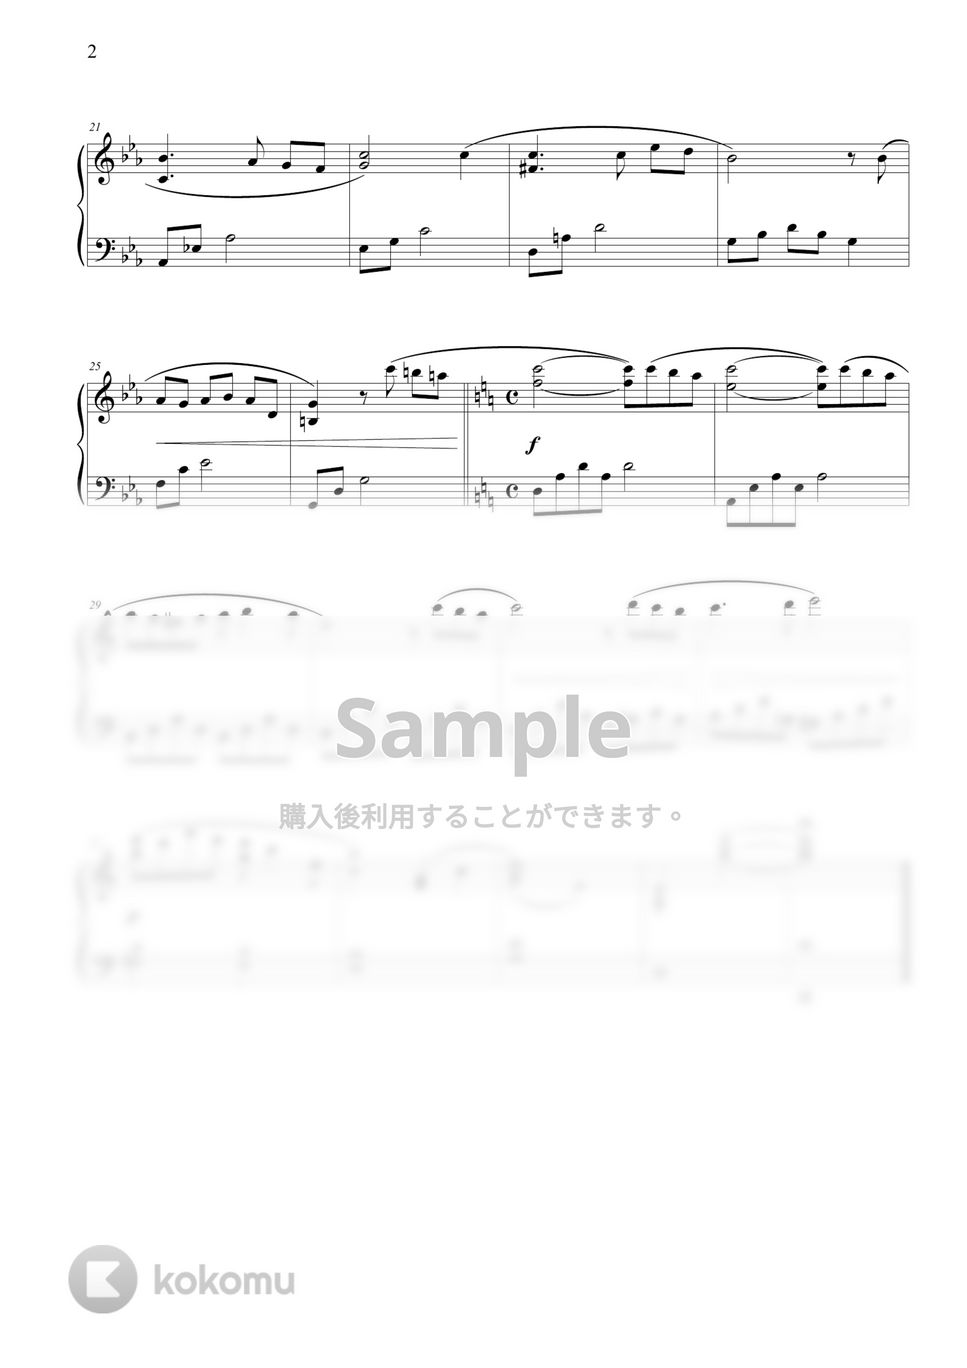 久石譲 (Joe Hisaishi) - Nostalgia (初級バージョン) by THIS IS PIANO